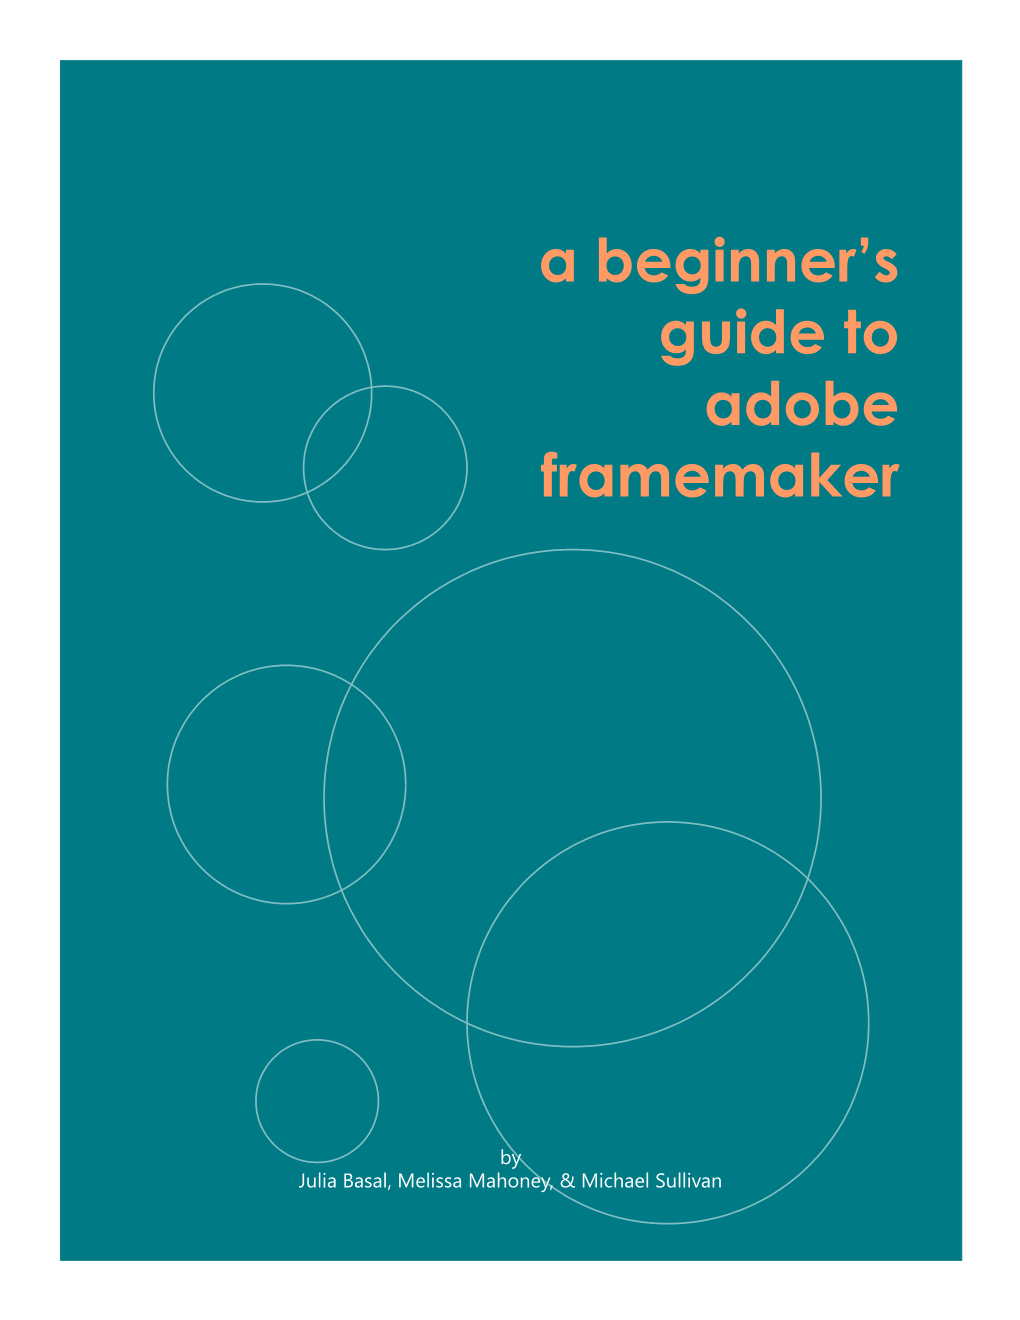 A Beginner's Guide to Adobe Framemaker